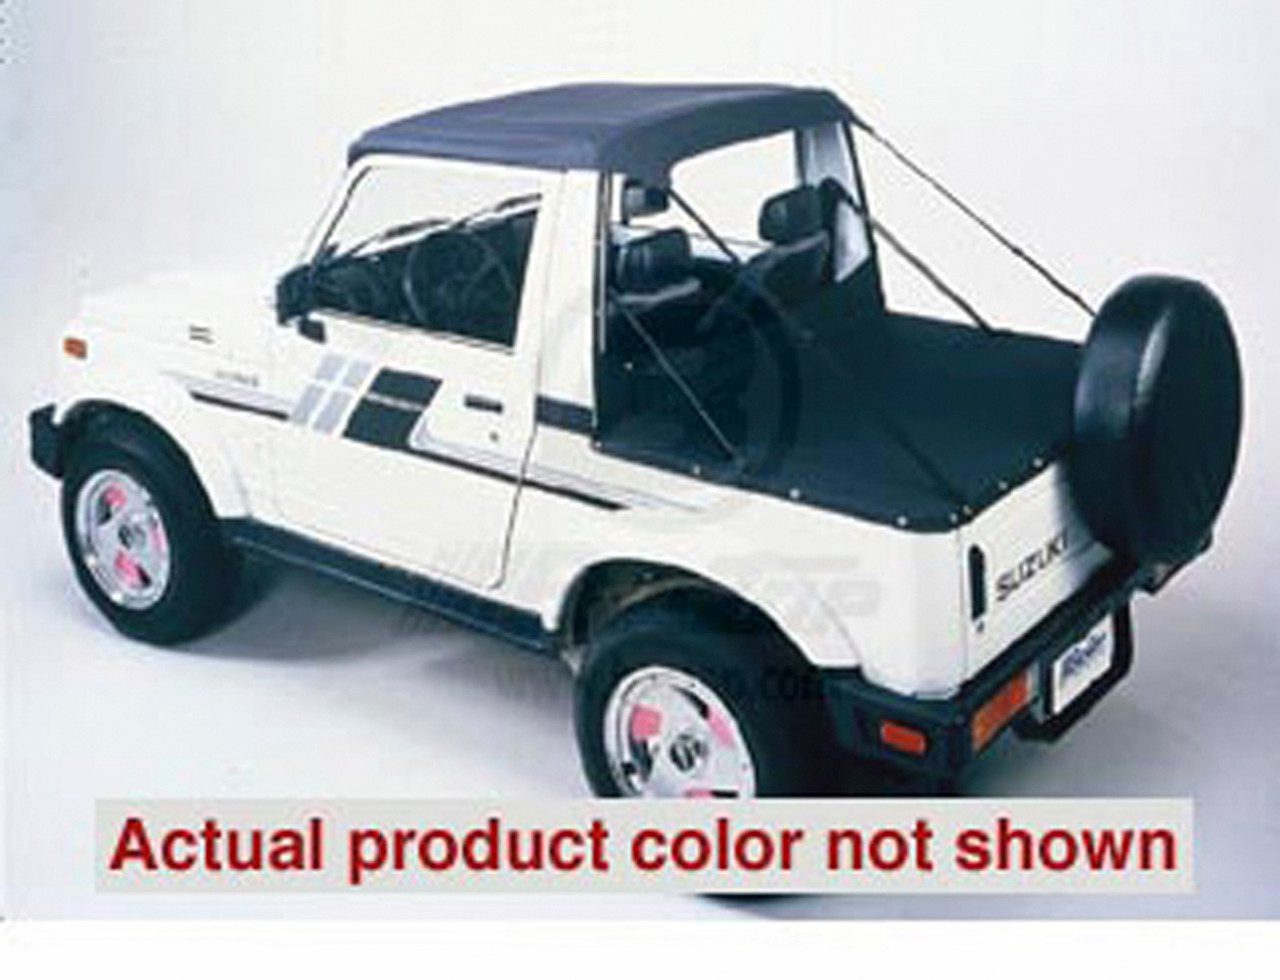 1995 Suzuki Samurai Price, Value, Ratings & Reviews